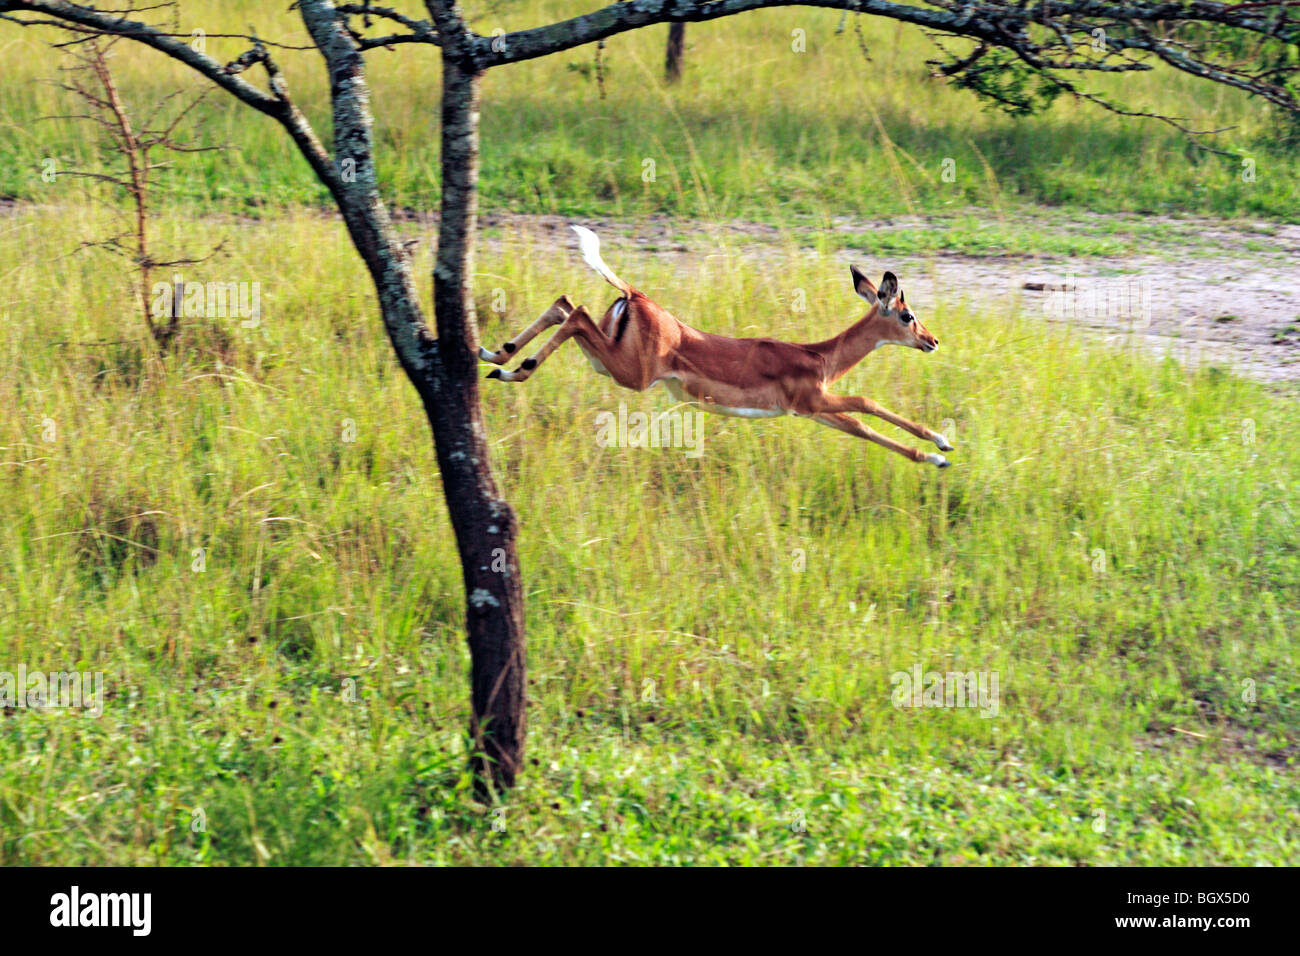 Oribi antelope (Ourebia ourebi), Lake Mburo National park, Uganda, East Africa Stock Photo